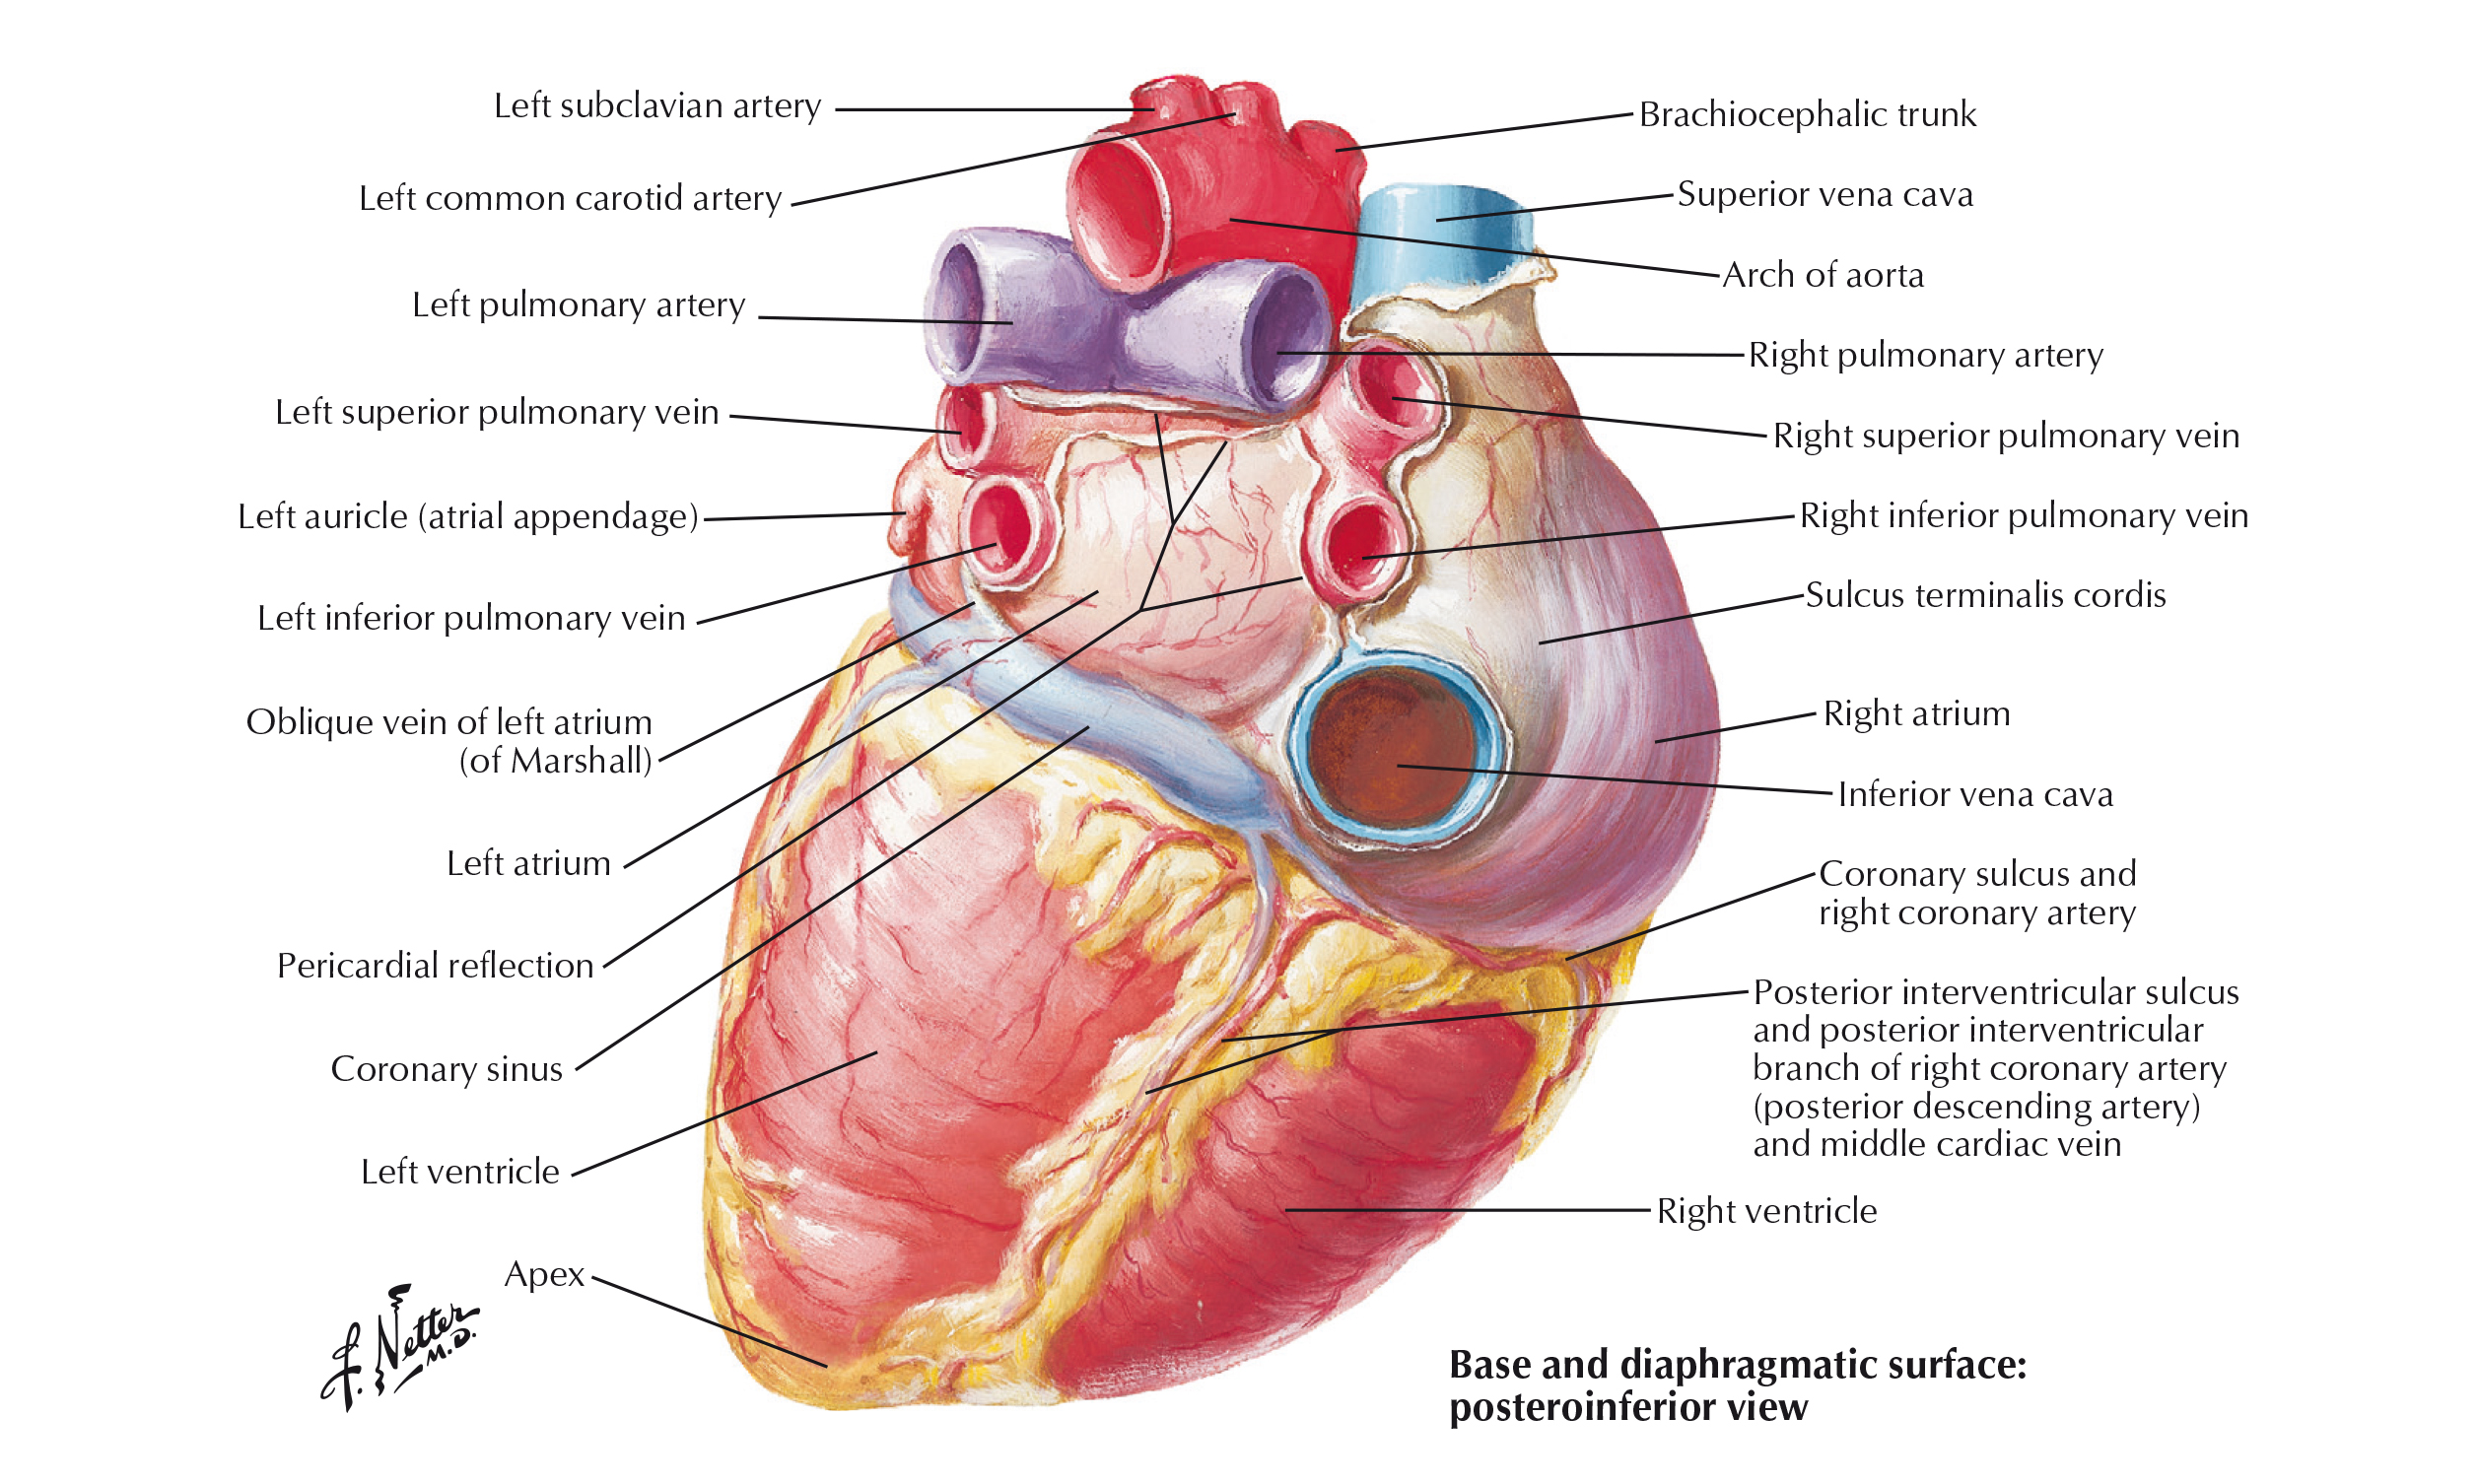 Cordis латынь. Венечная борозда сердца анатомия. Диафрагмальная поверхность сердца анатомия. Борозды на поверхности сердца анатомия. Строение сердца венечная борозда.